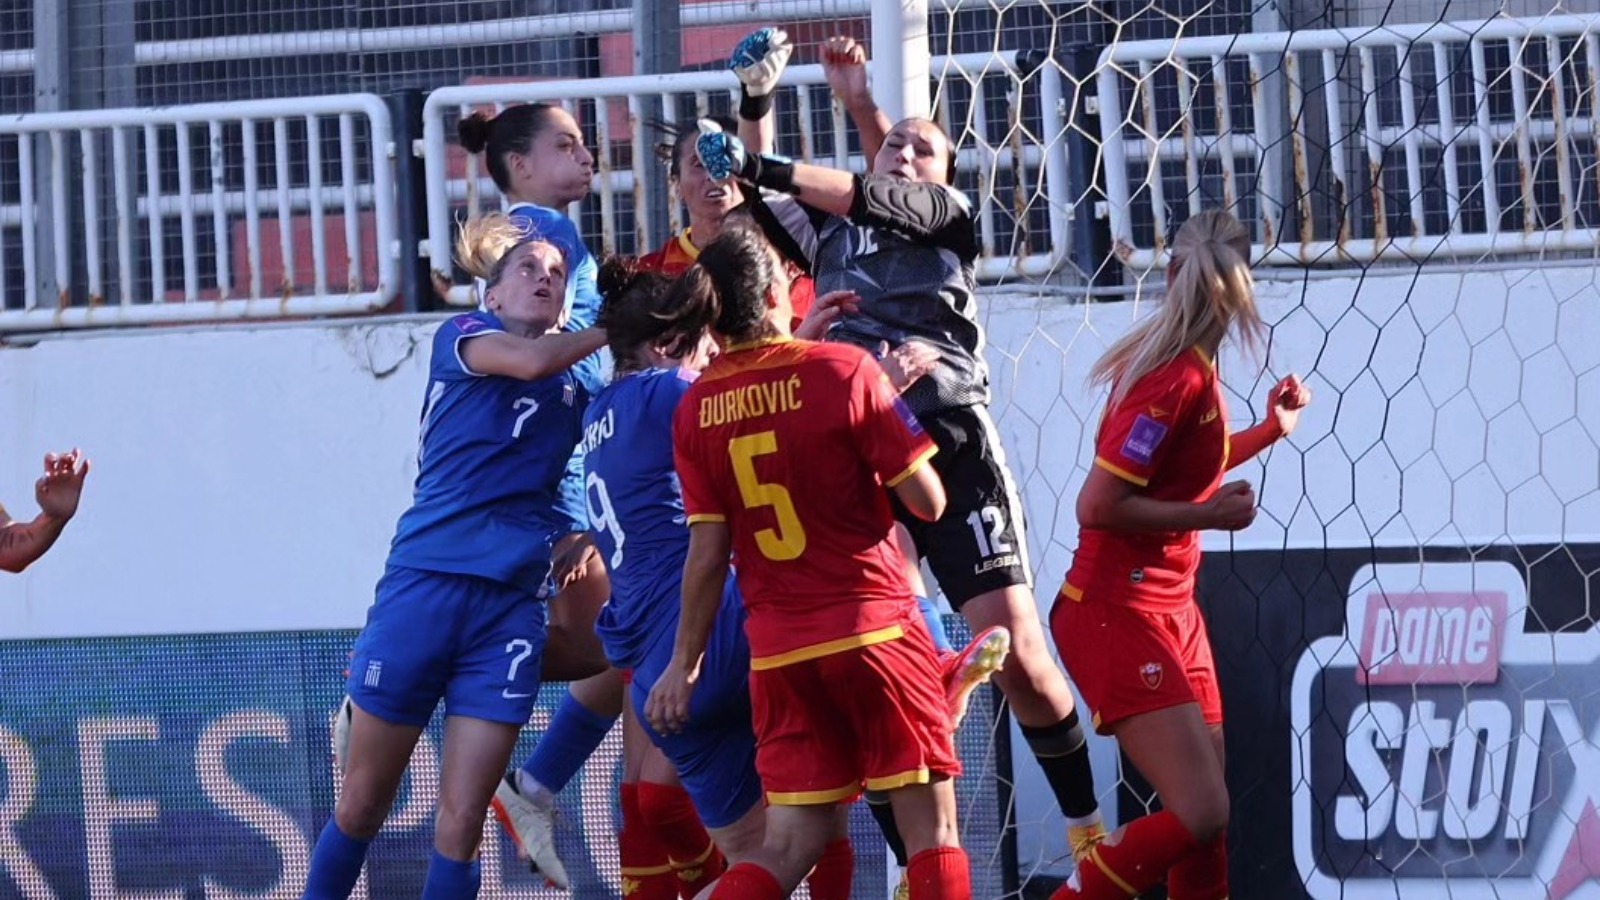 Ελλάδα - Μαυροβούνιο 2-2: Έκανε την ανατροπή αλλά...πληγώθηκε στις καθυστερήσεις